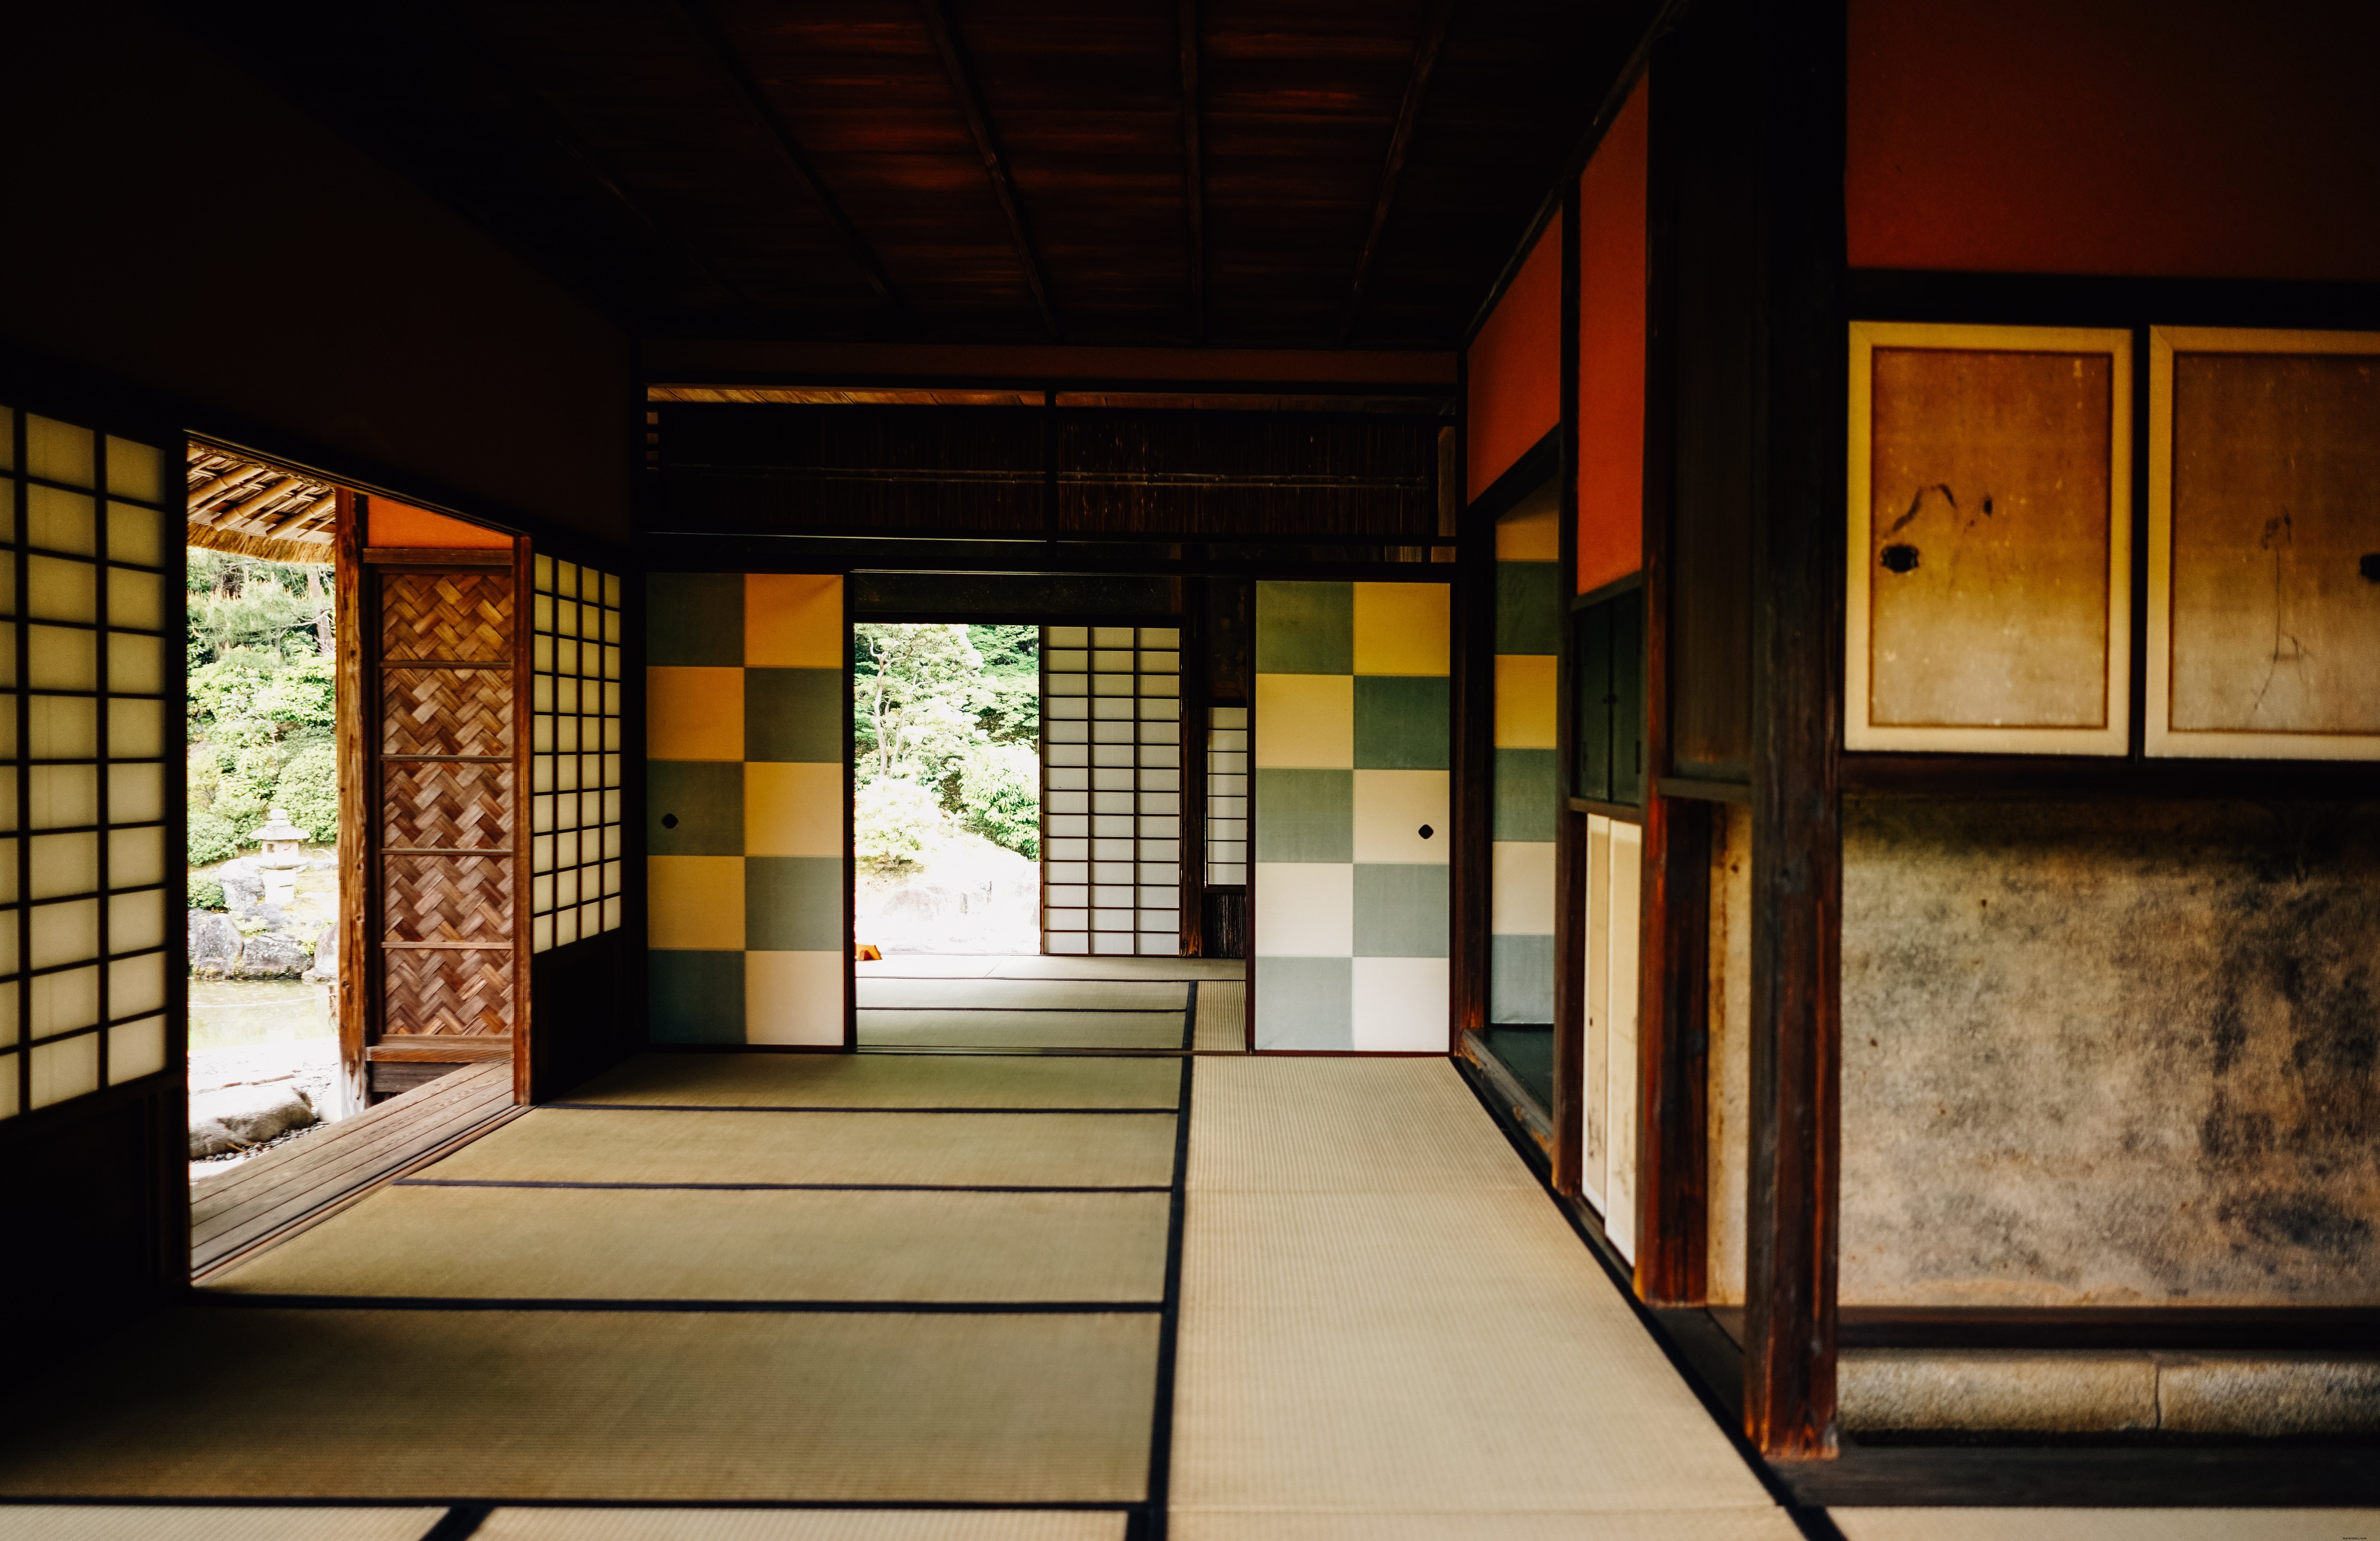 Foto de piso de alfombra de tatami y puertas corredizas